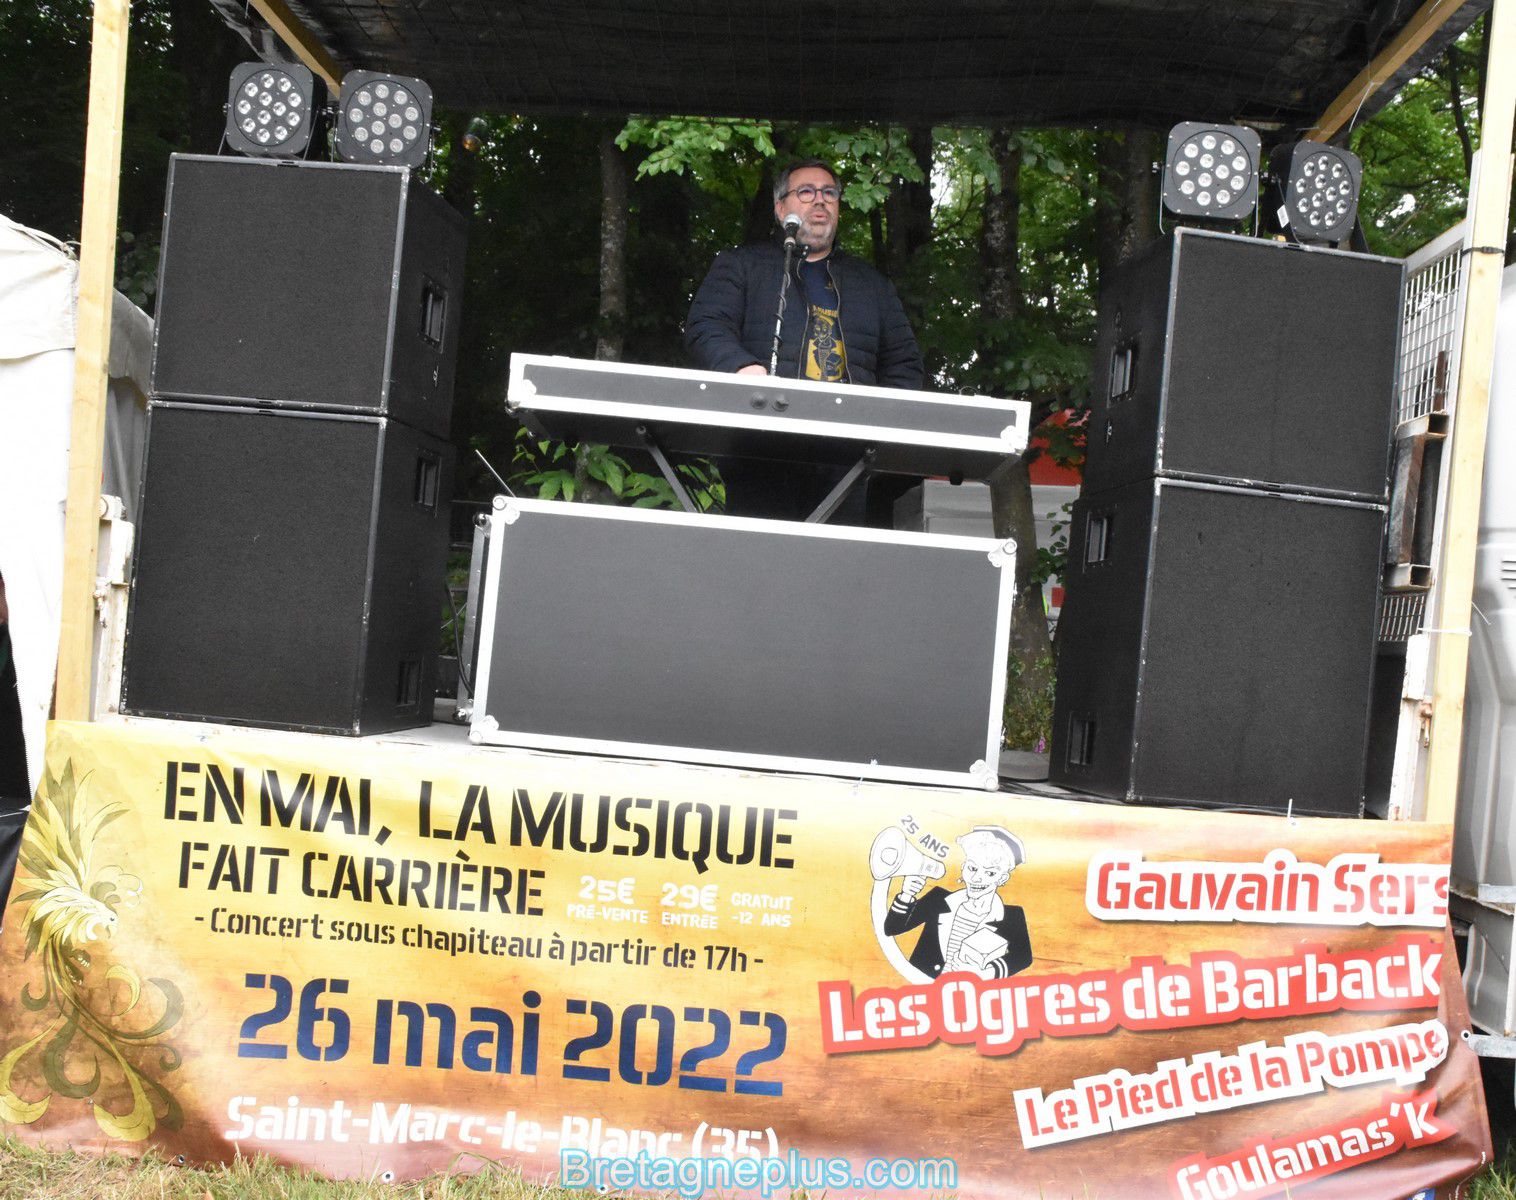 Festival En mai la musique fait carrière 2022